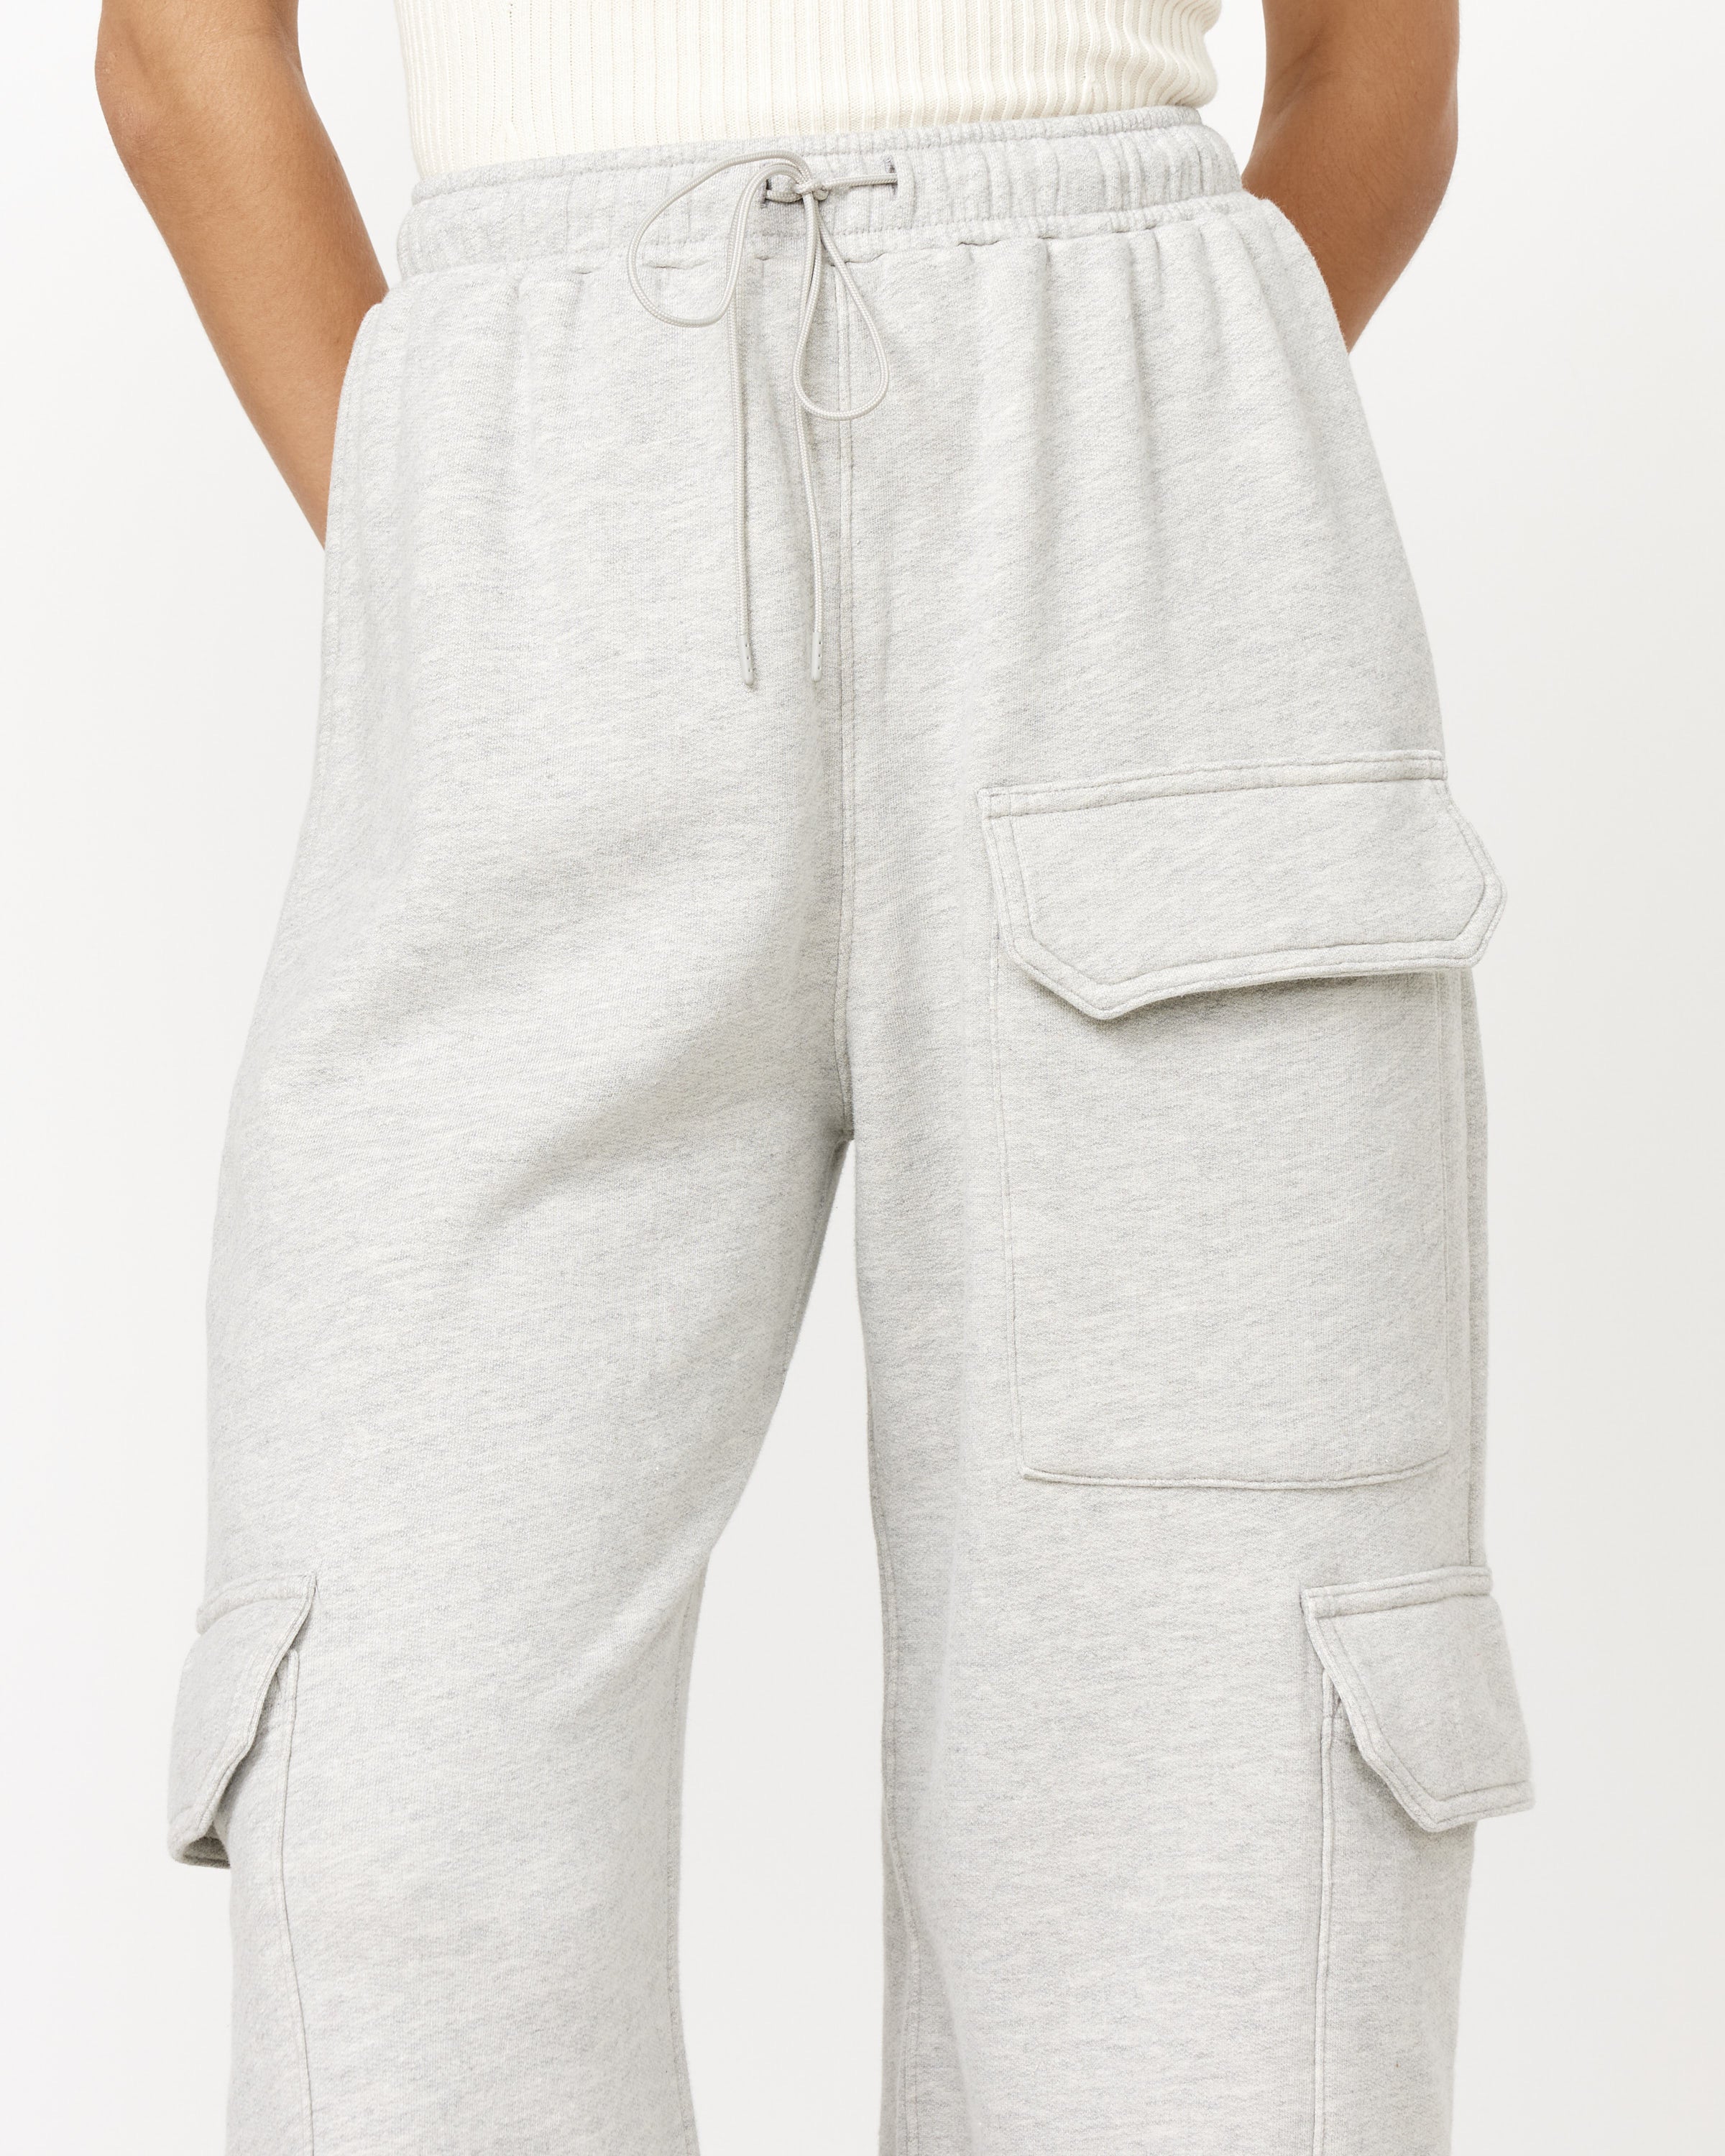 Louis Vuitton Cotton-Linen Cargo Pants , Beige, 34